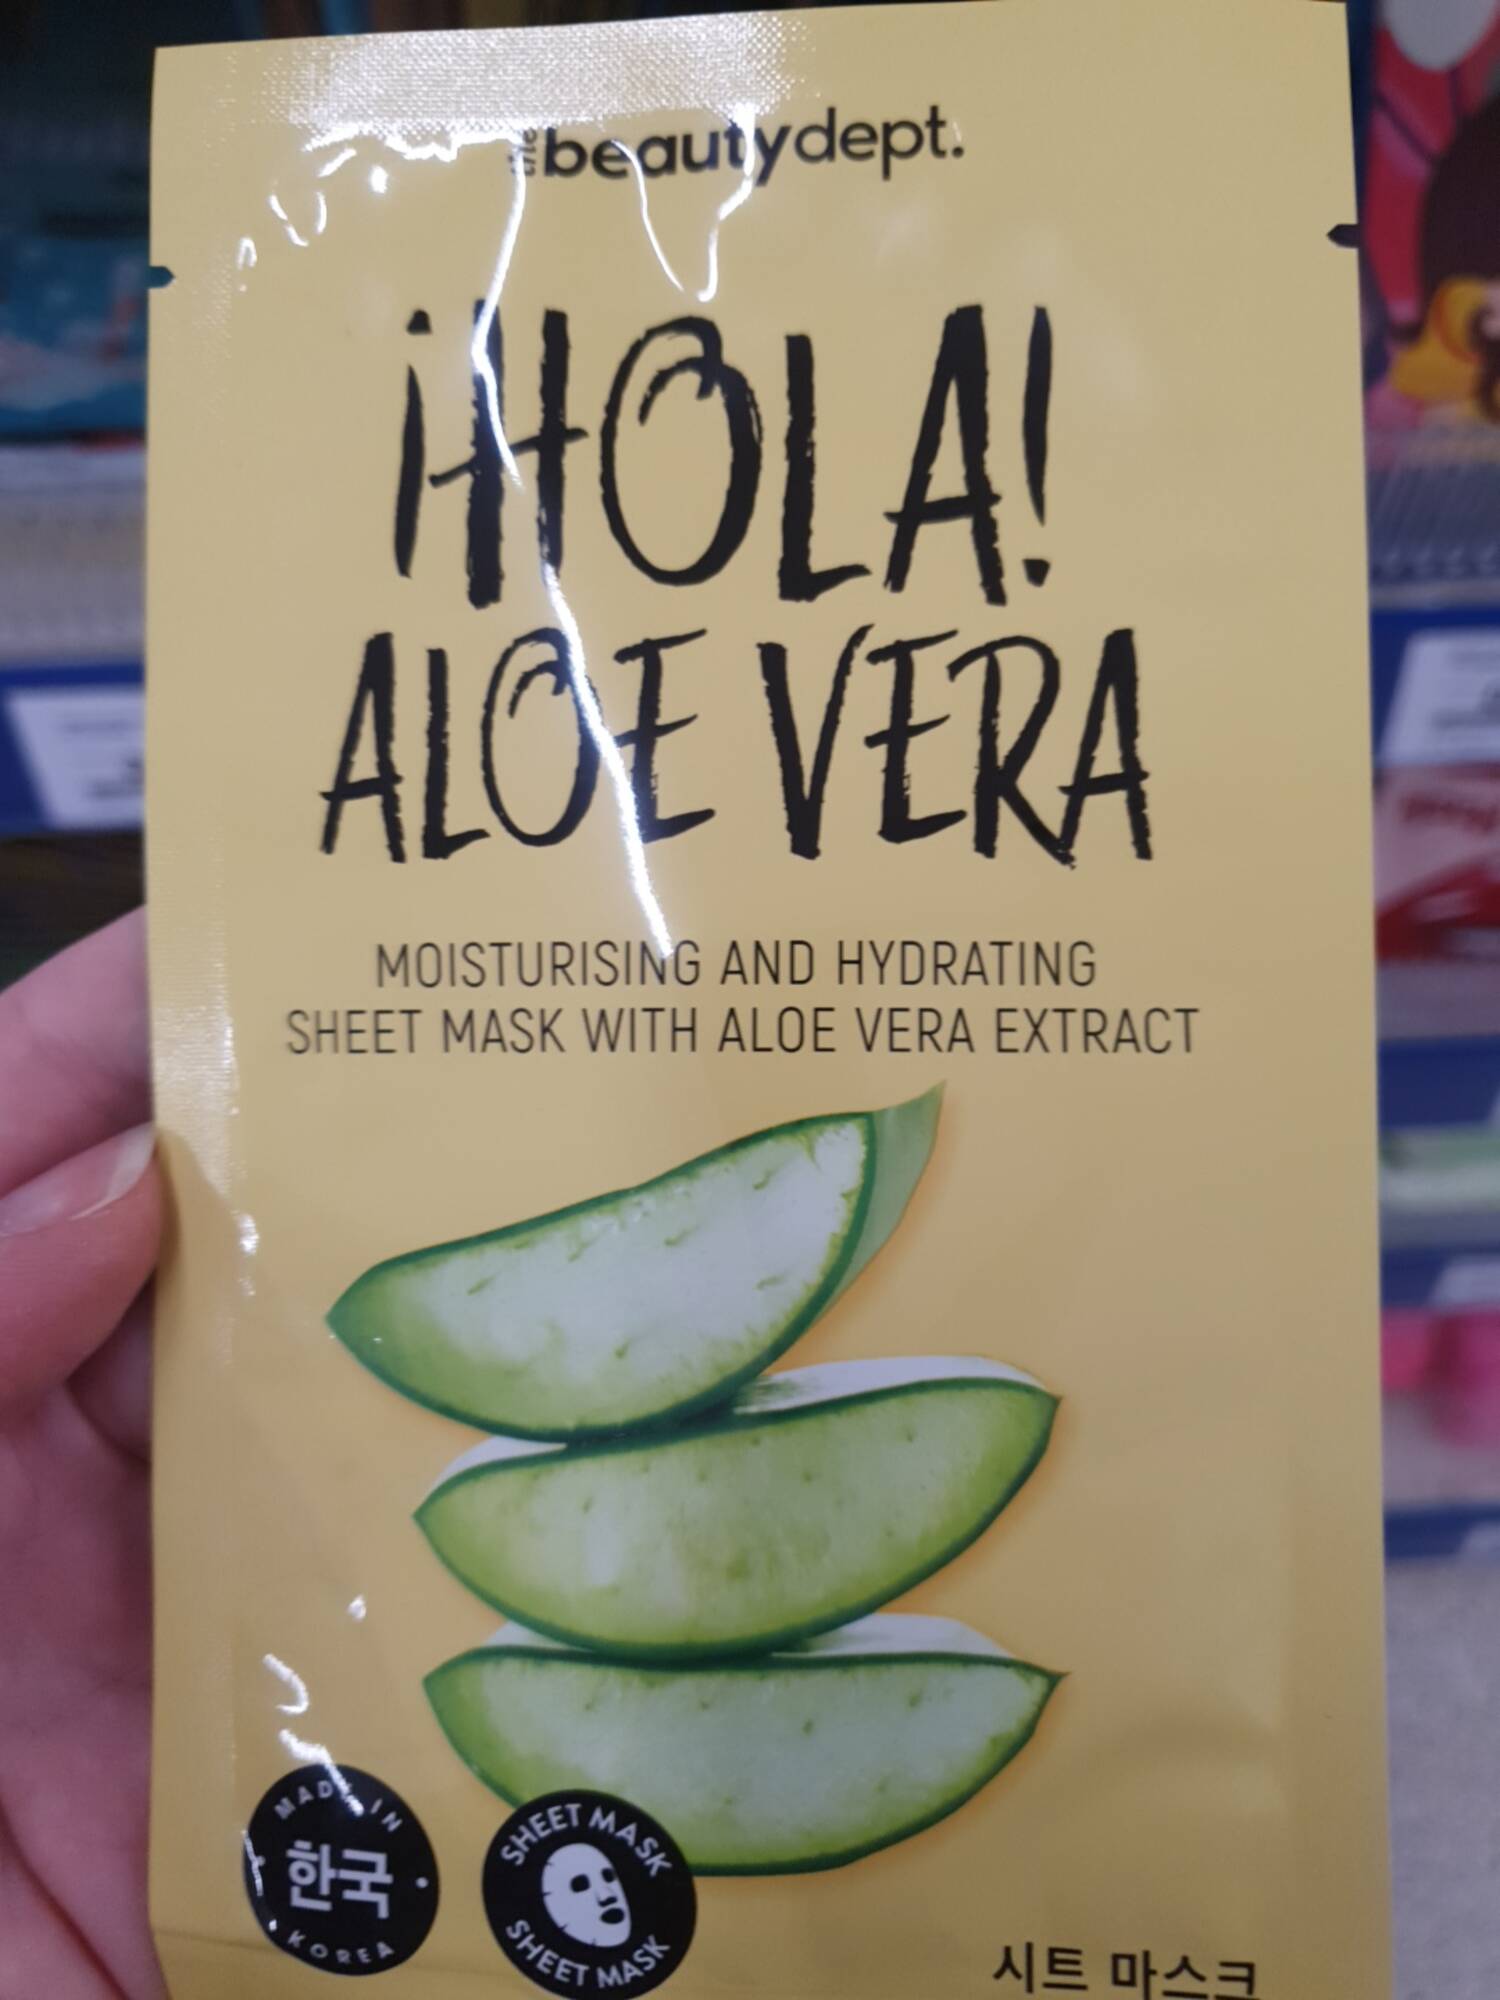 THE BEAUTY DEPT - Hola aloe vera_sheet mask with aloe vera extract